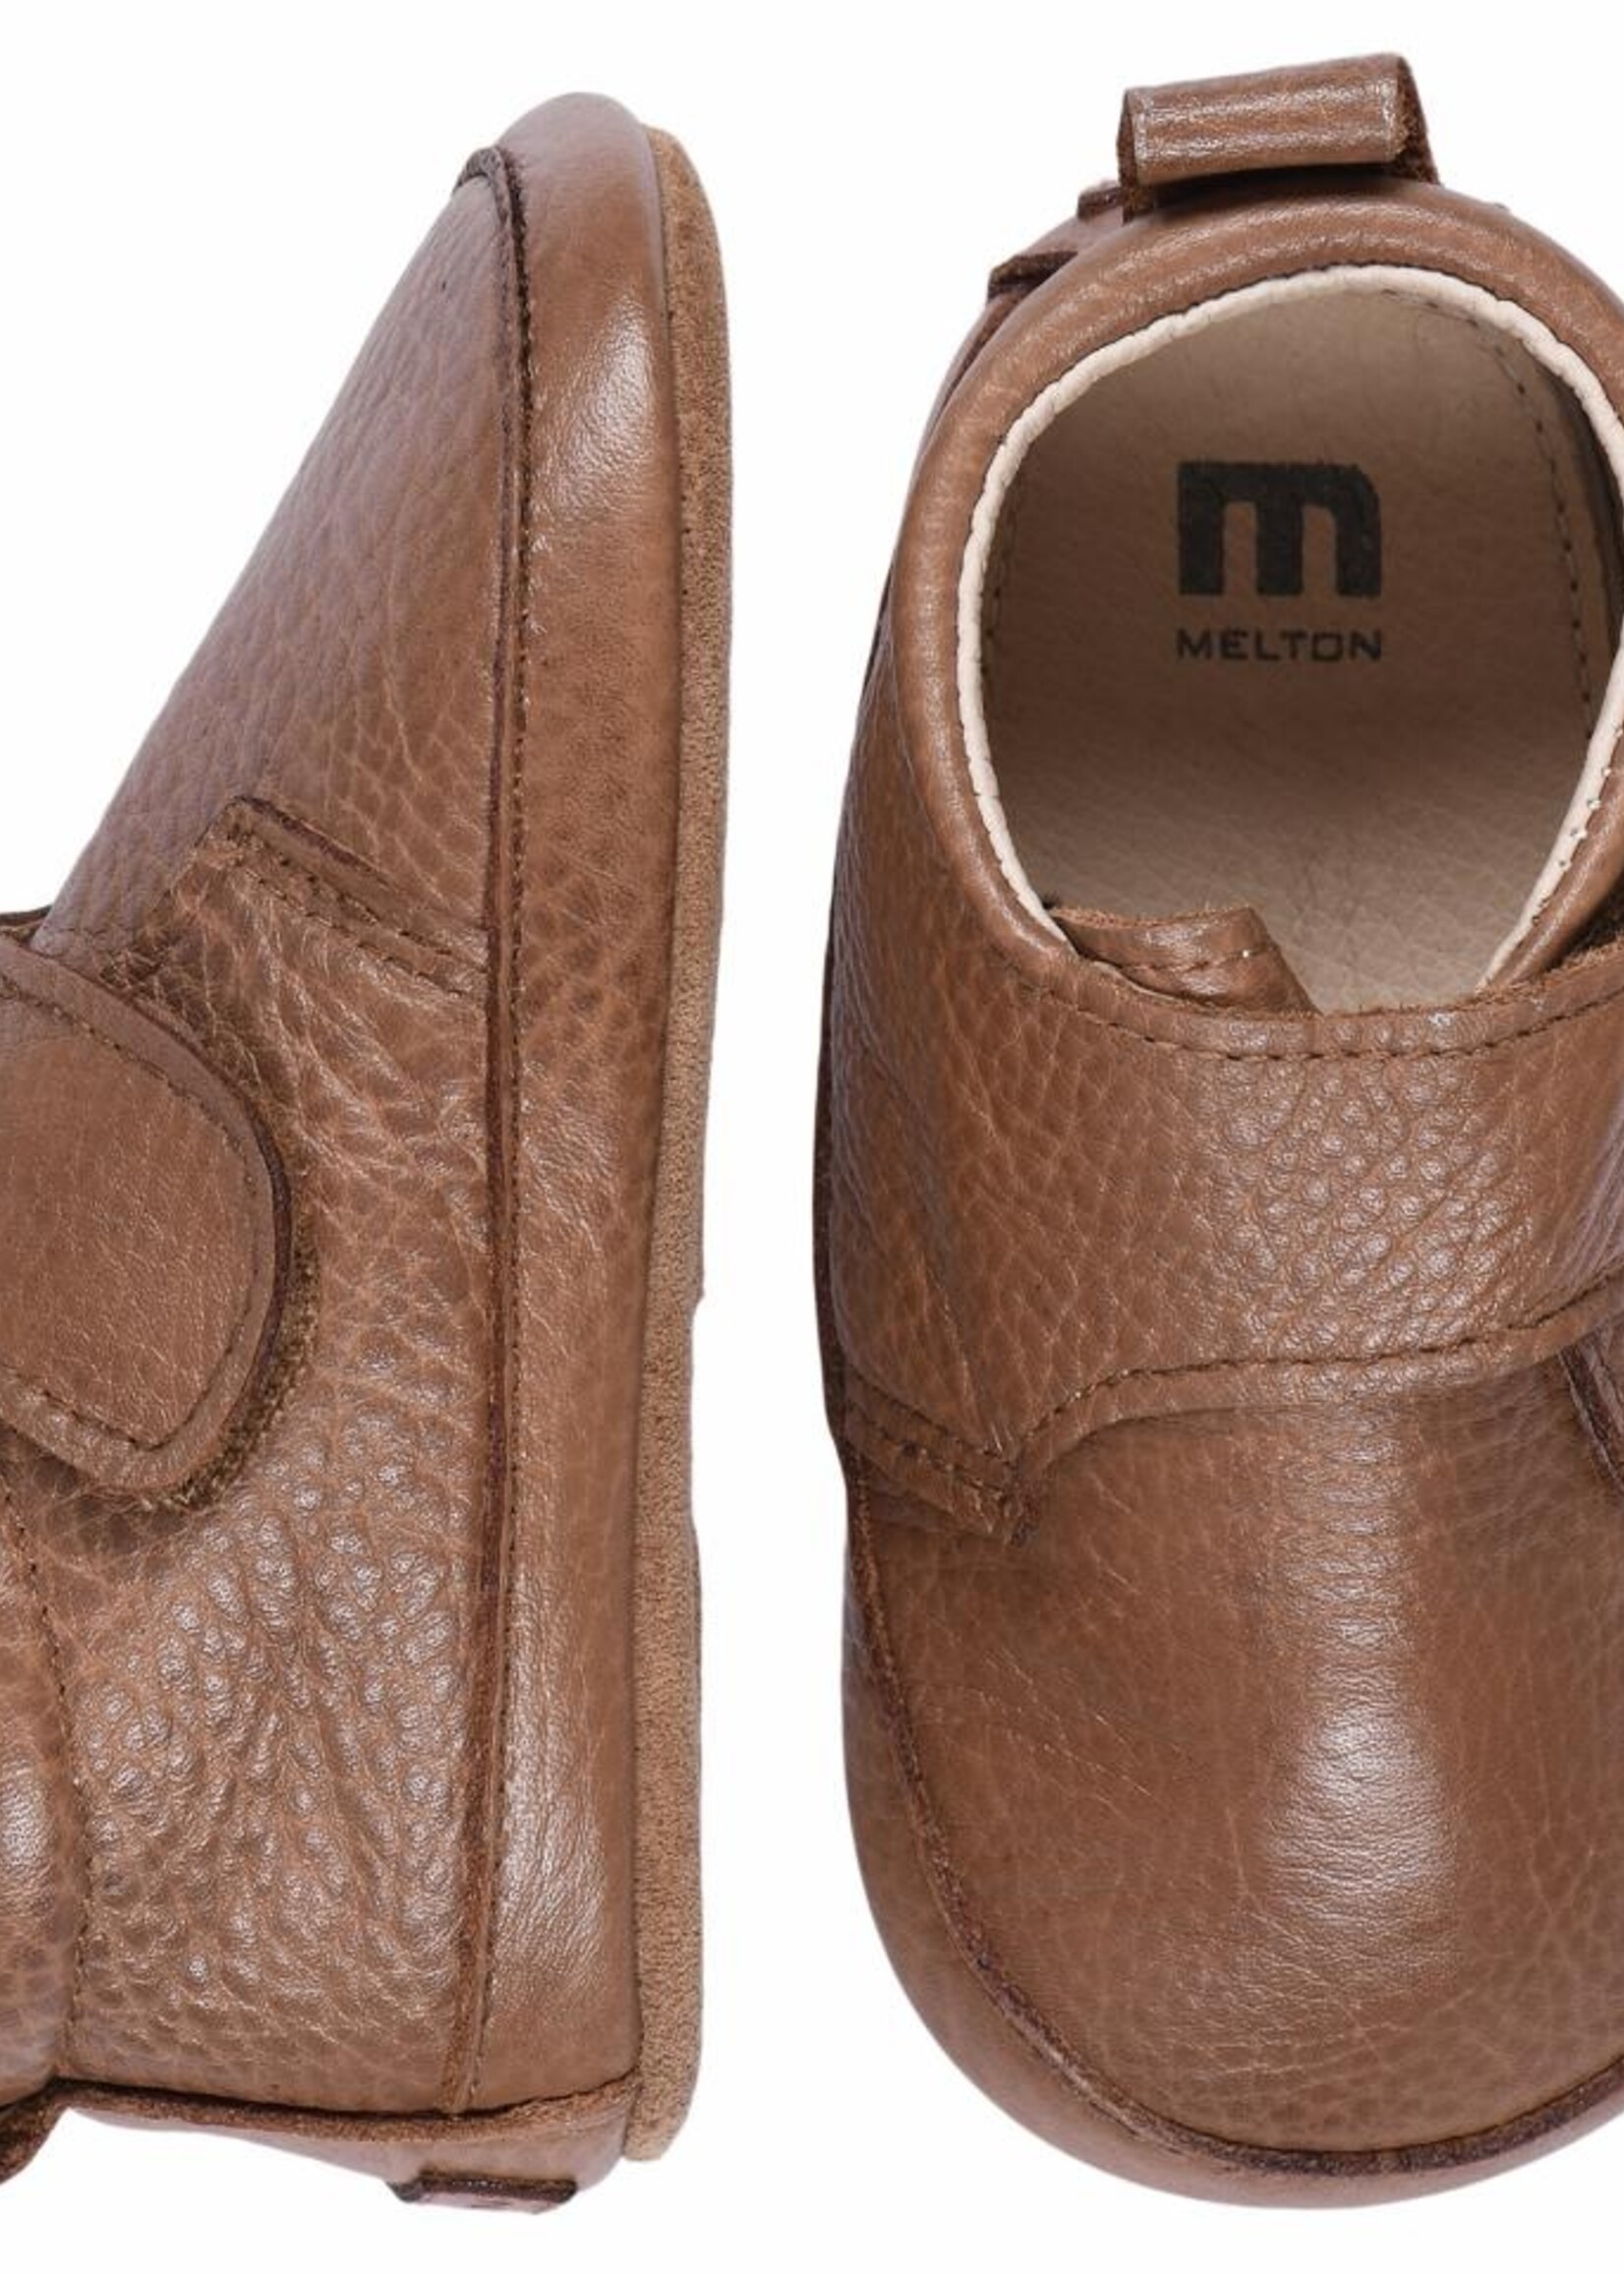 MP Denmark Melton | Luxury leather slippers - Tortoise shell 451